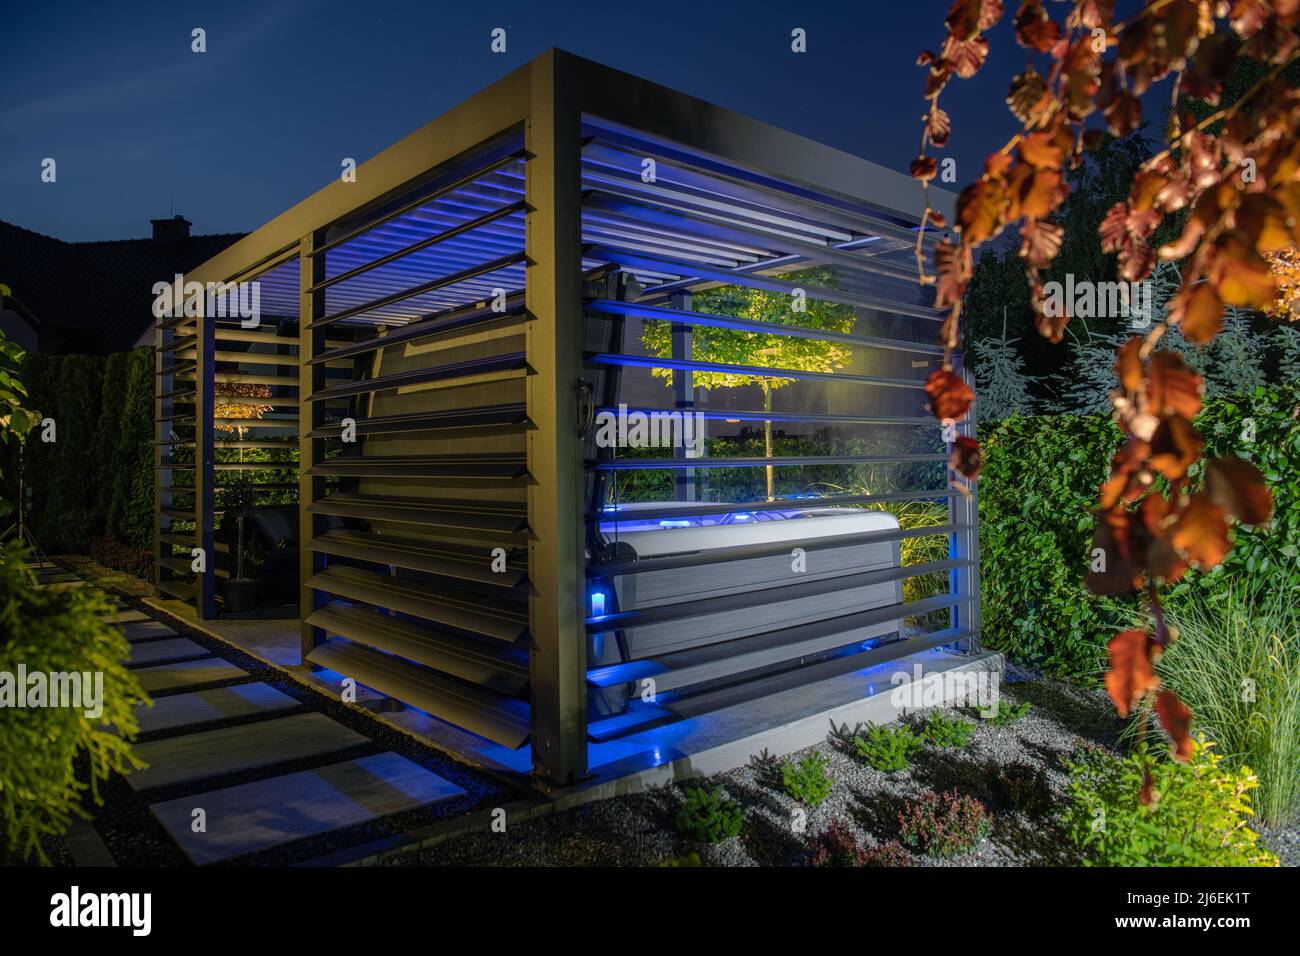 Aluminium-Pavillon mit Whirlpool in einem modernen Garten. Kleine Architekturelemente. Stockfoto